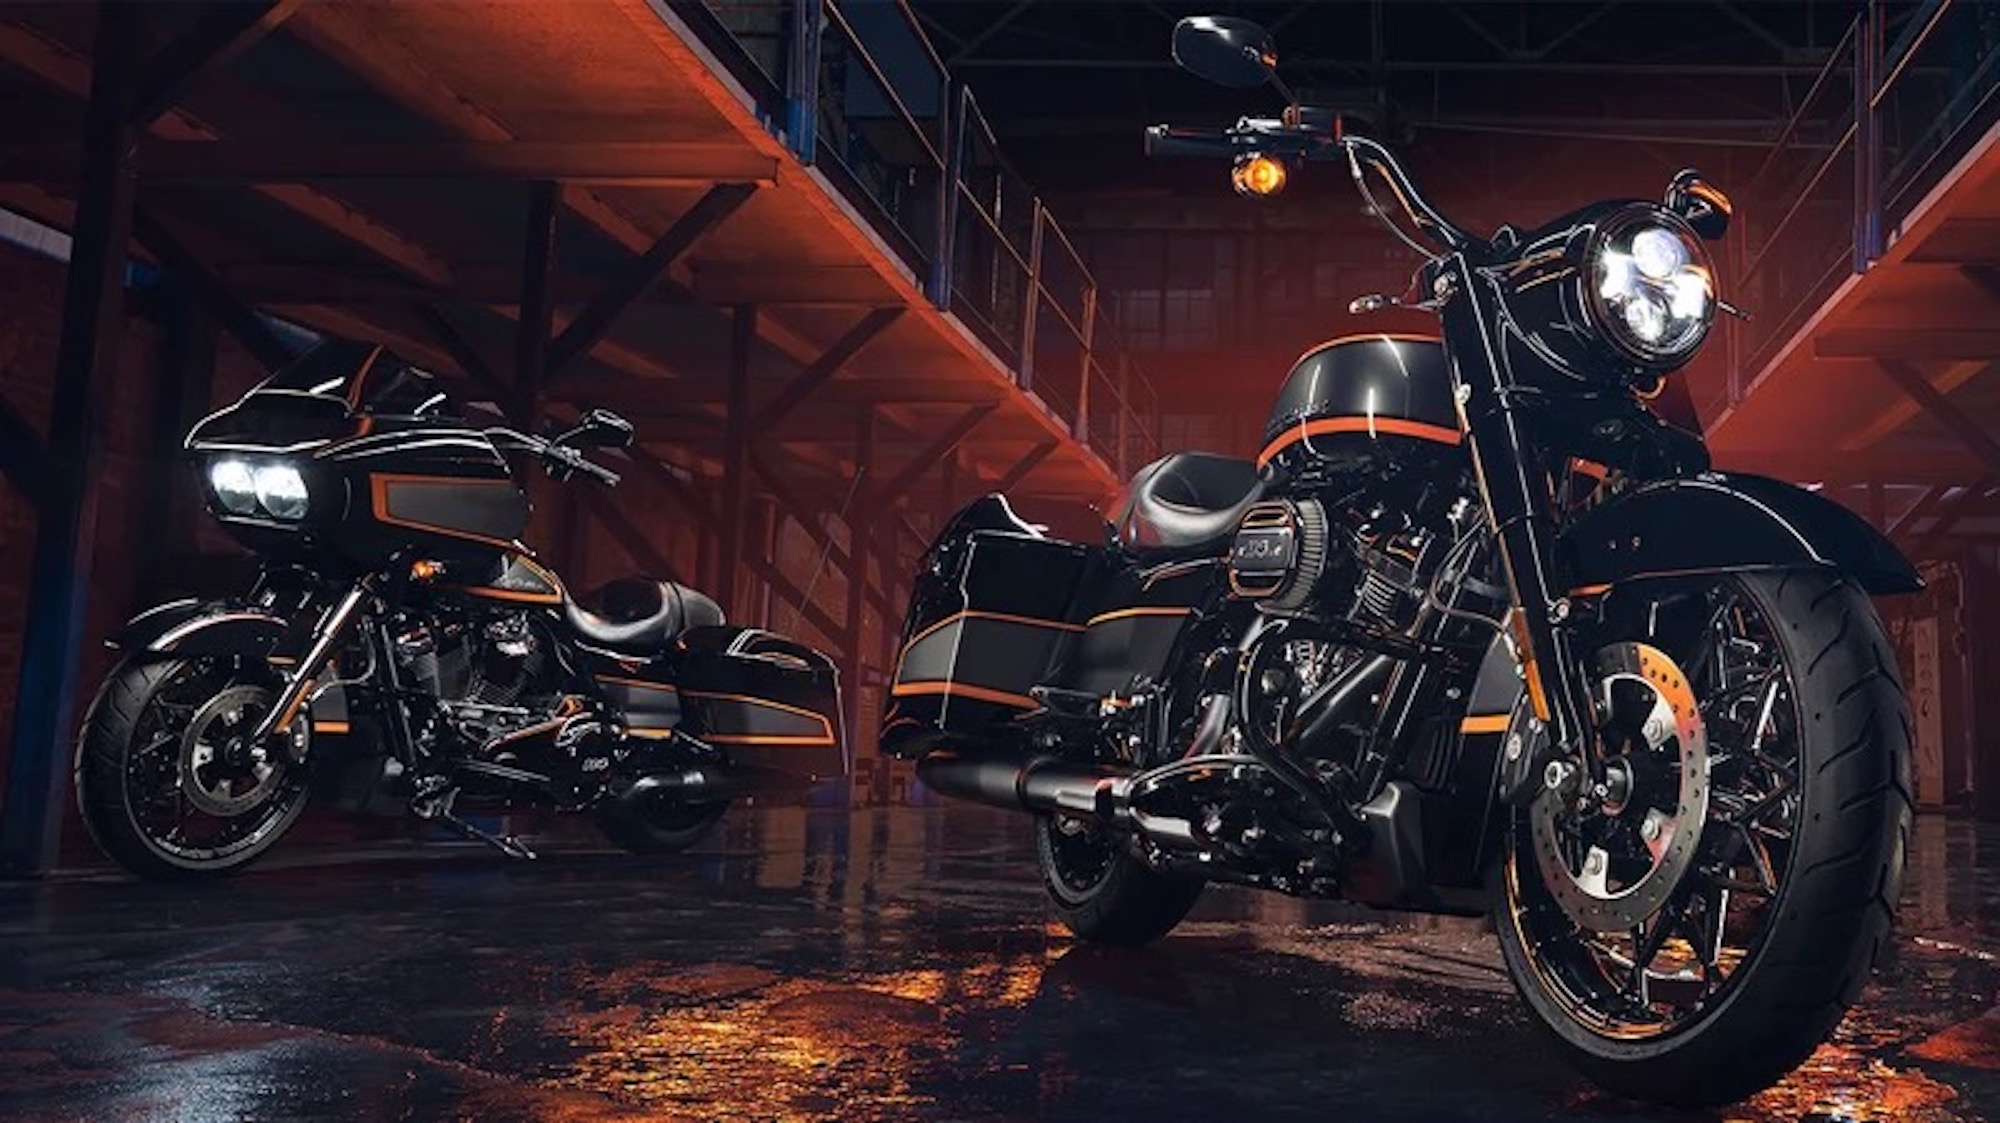 哈雷工厂顶点定制油漆。媒体来源Harley-Davidson。